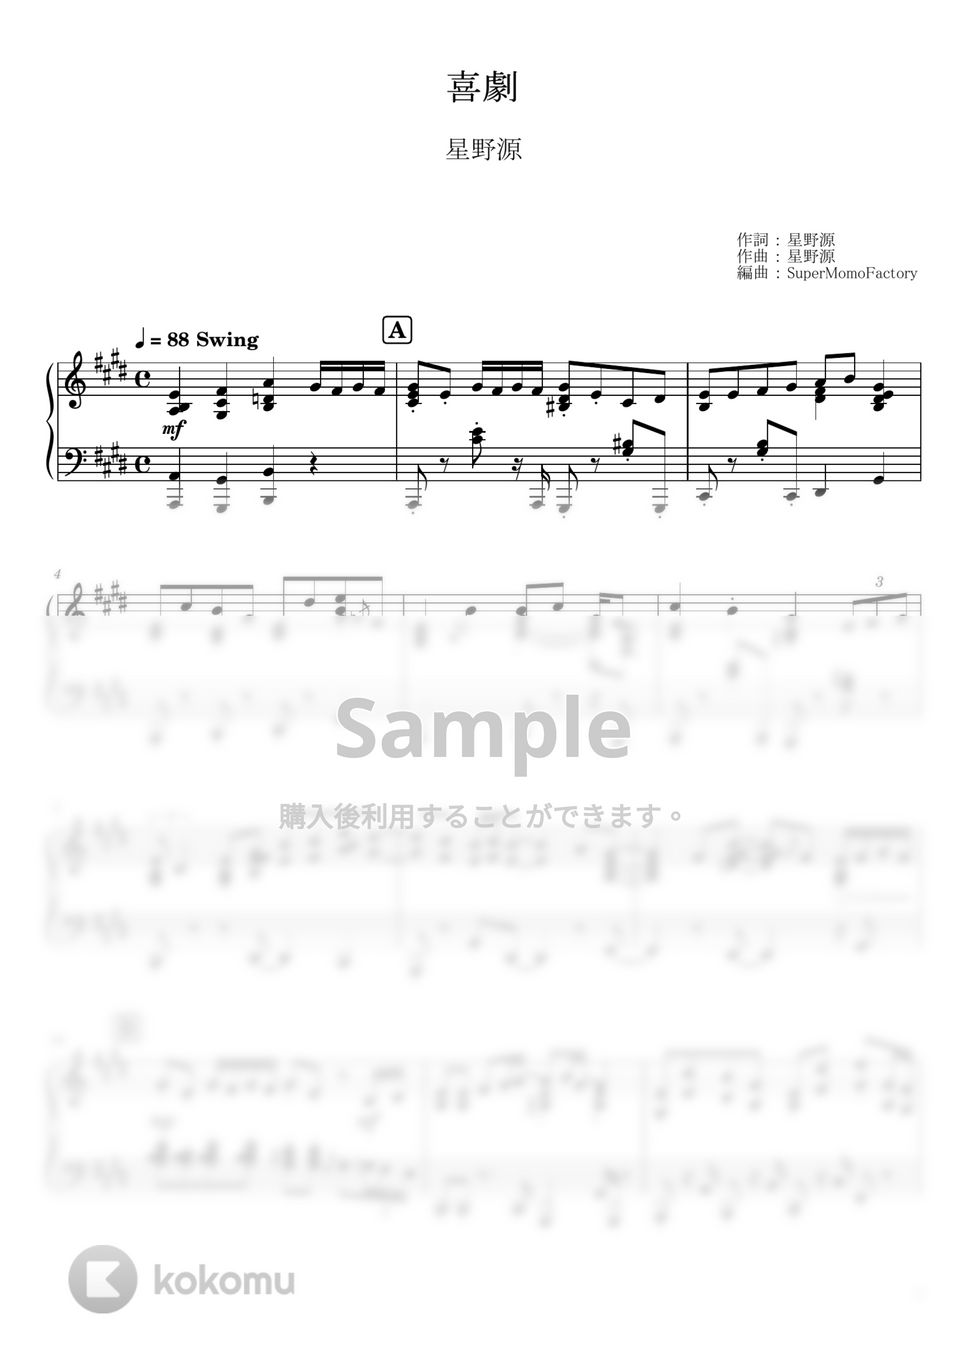 星野源 - 喜劇 (ピアノソロ / 上級) by SuperMomoFactory